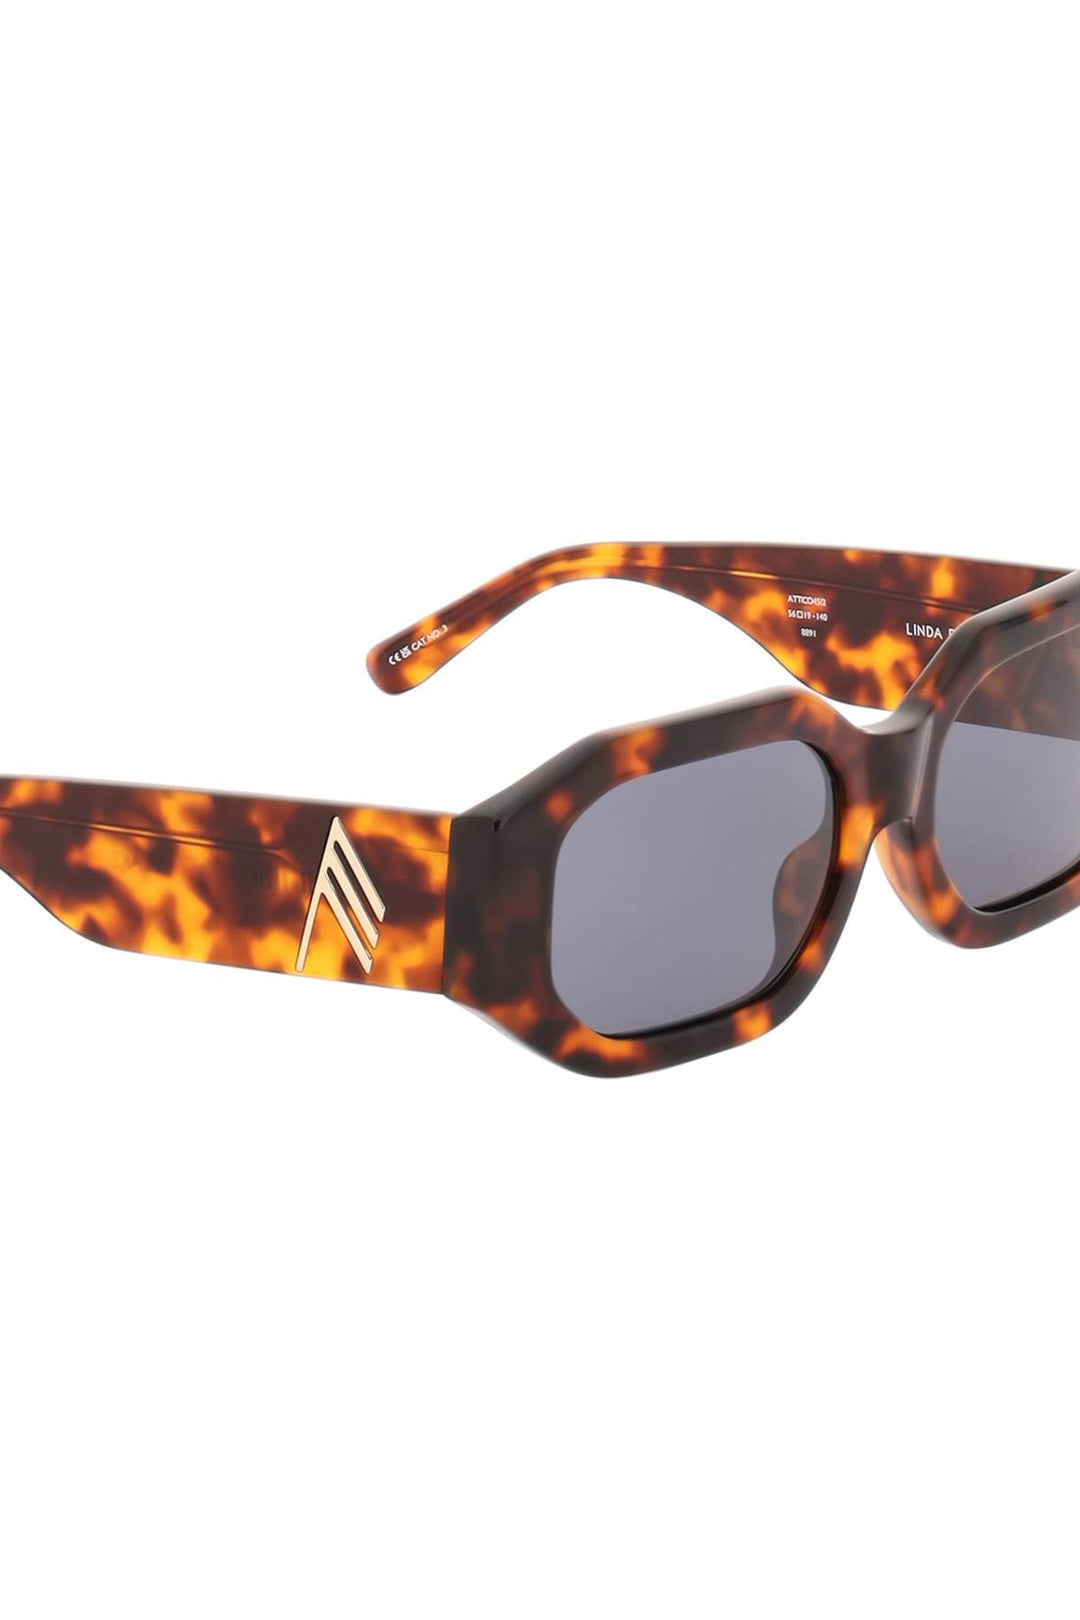 The Attico 'Blake' Tortoiseshell Sunglasses   Marrone